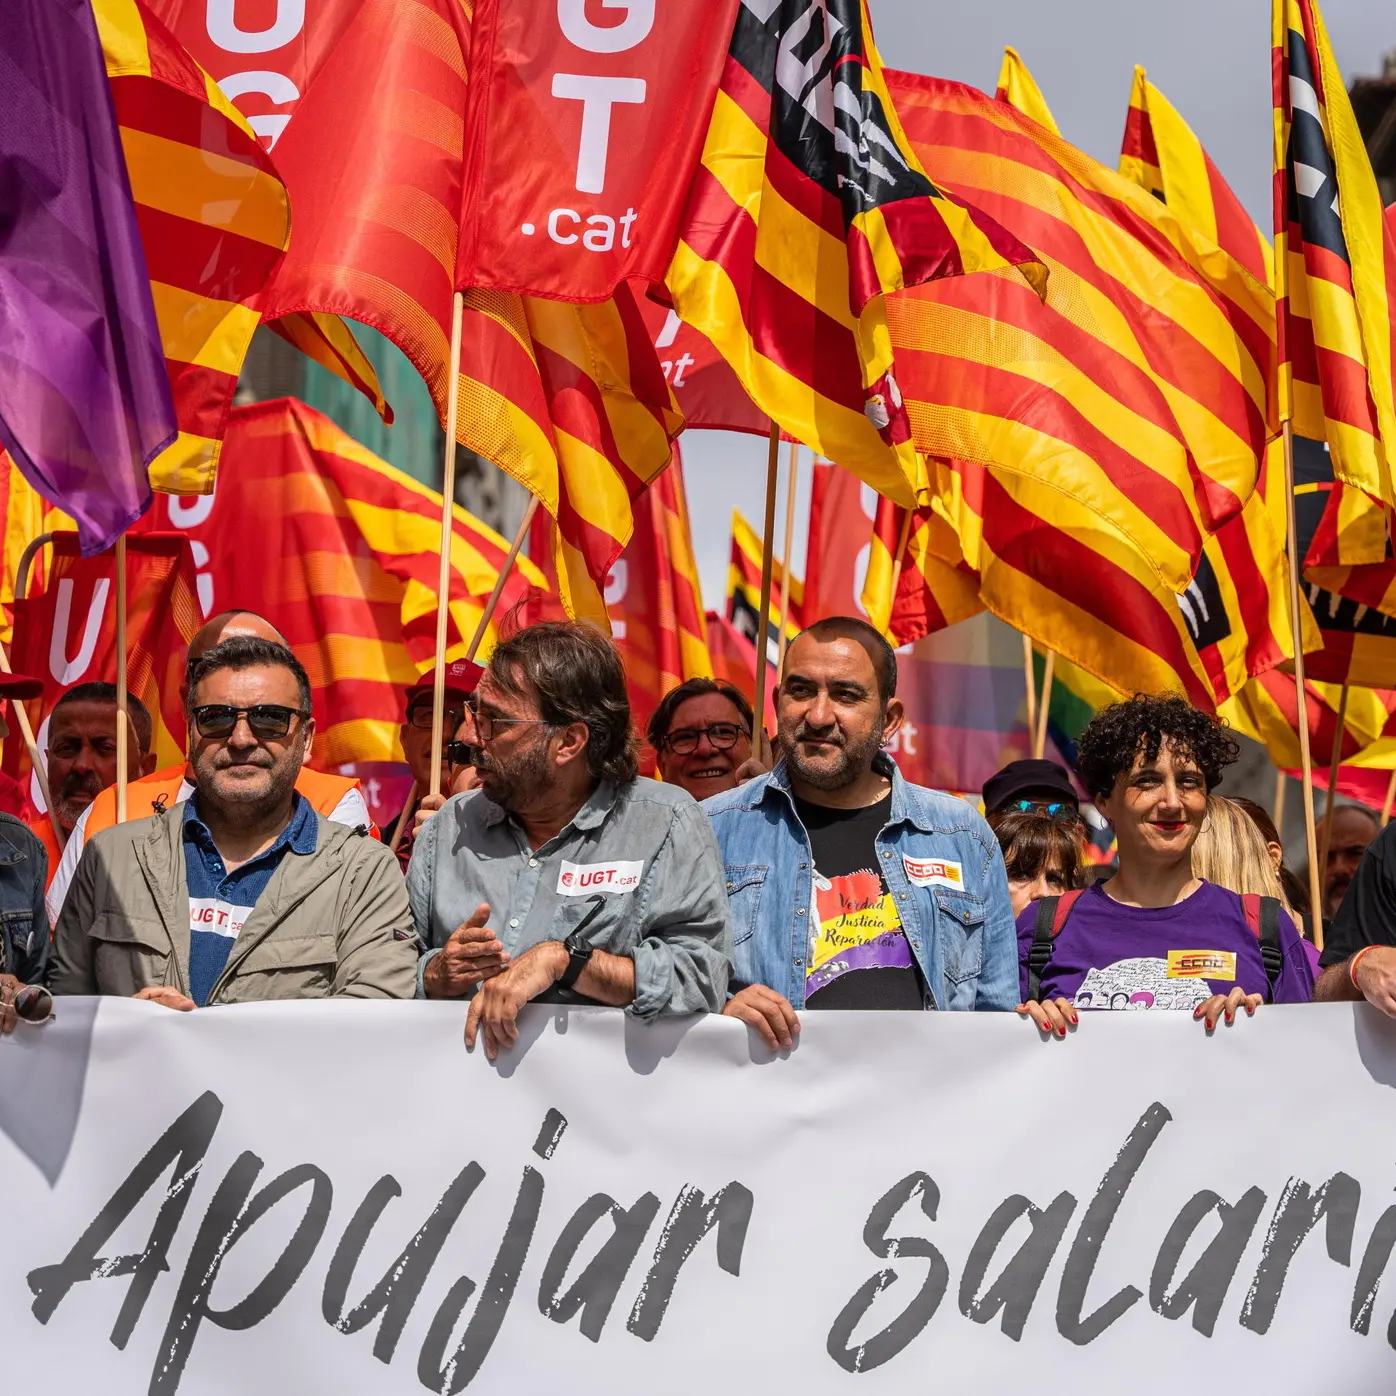 Lavoro ed economia, è la Spagna il faro di un’Europa più giusta